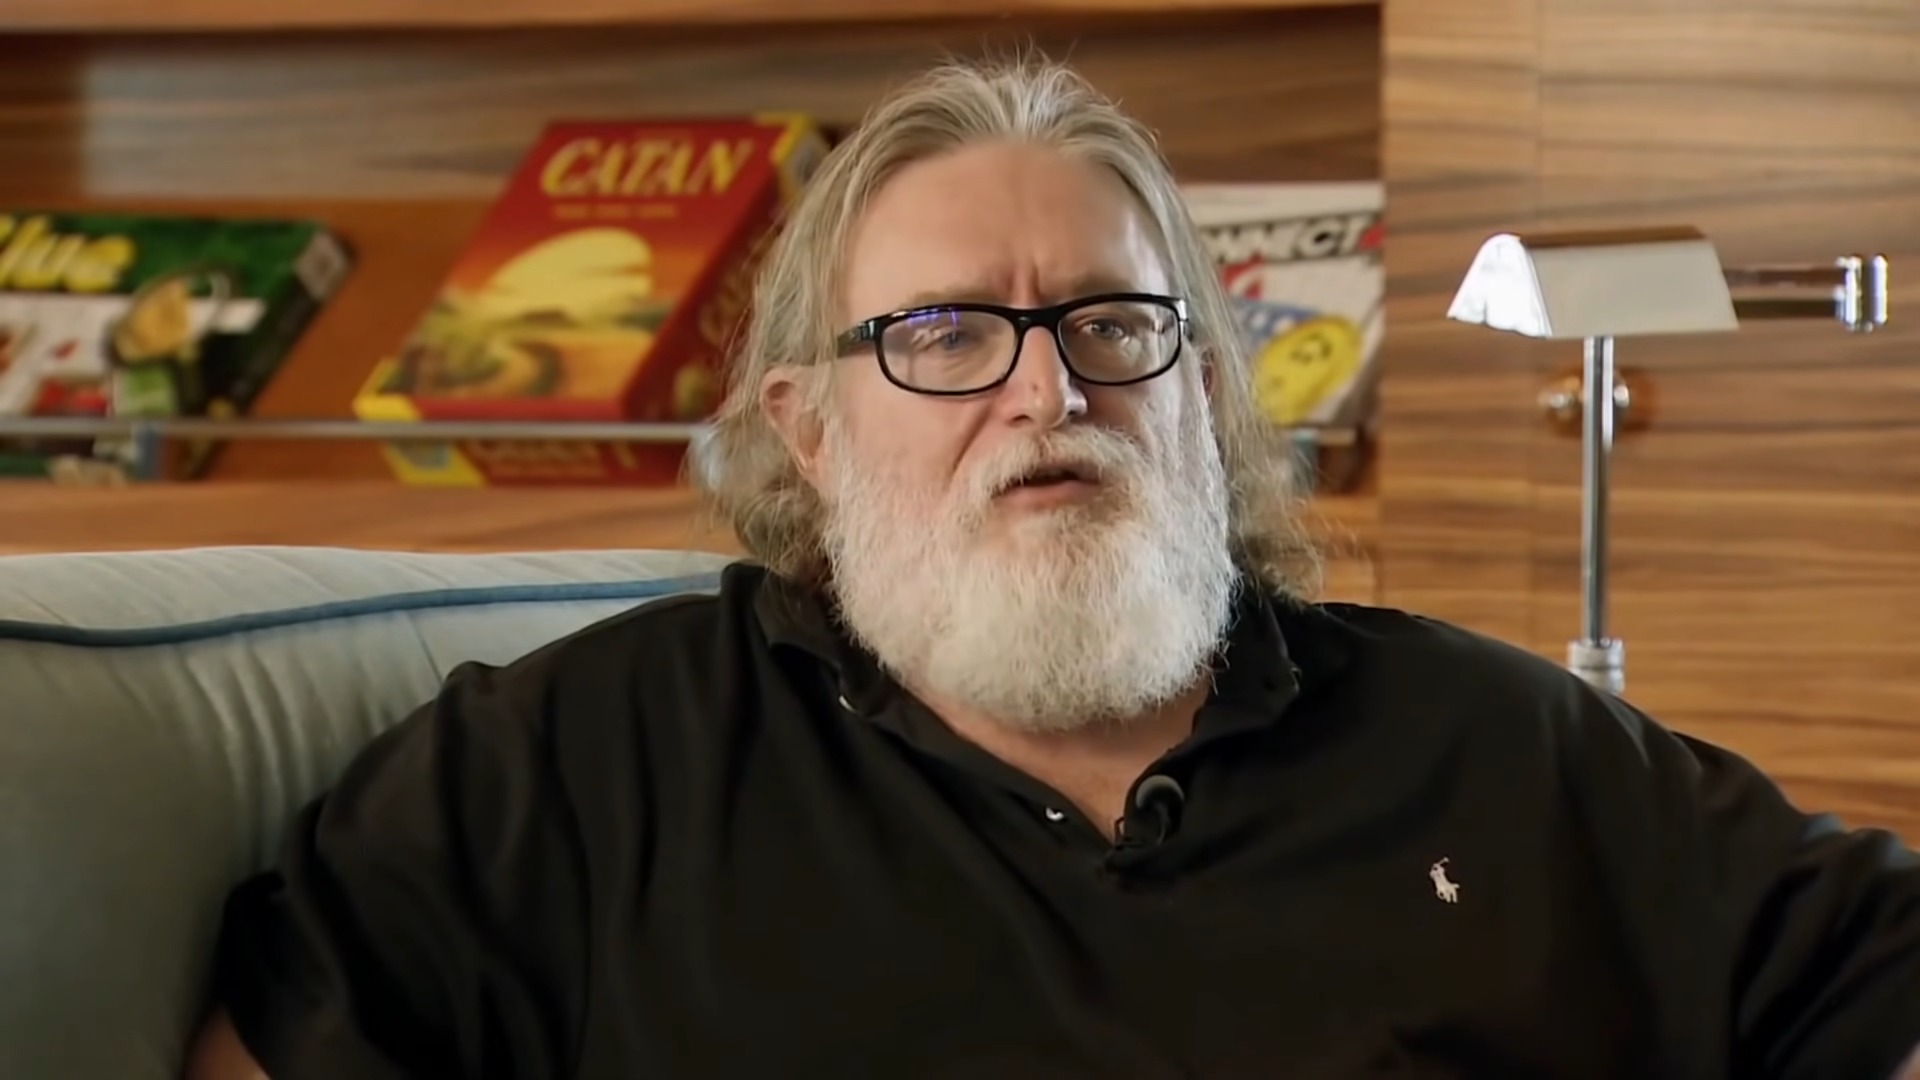 Quem é Gabe Newell? Conheça o criador da Valve e dono da Steam – PixelNerd